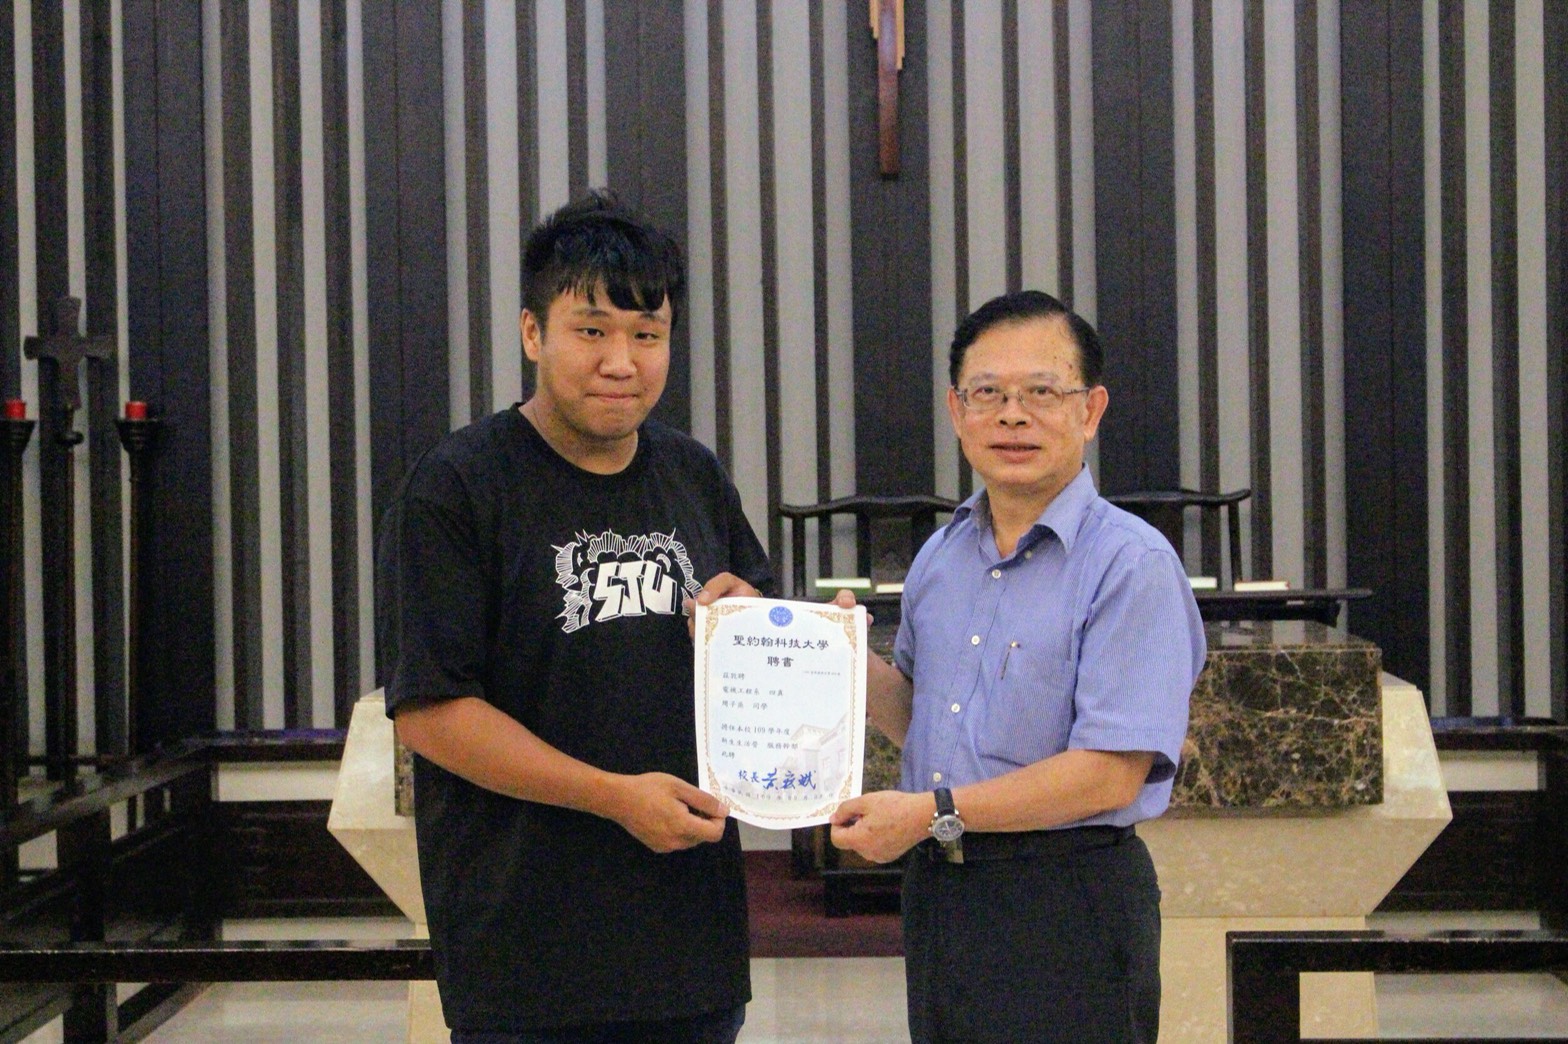 黃宏斌校長（右）頒發證書給今年度新生約翰營總召周子烝（左）。